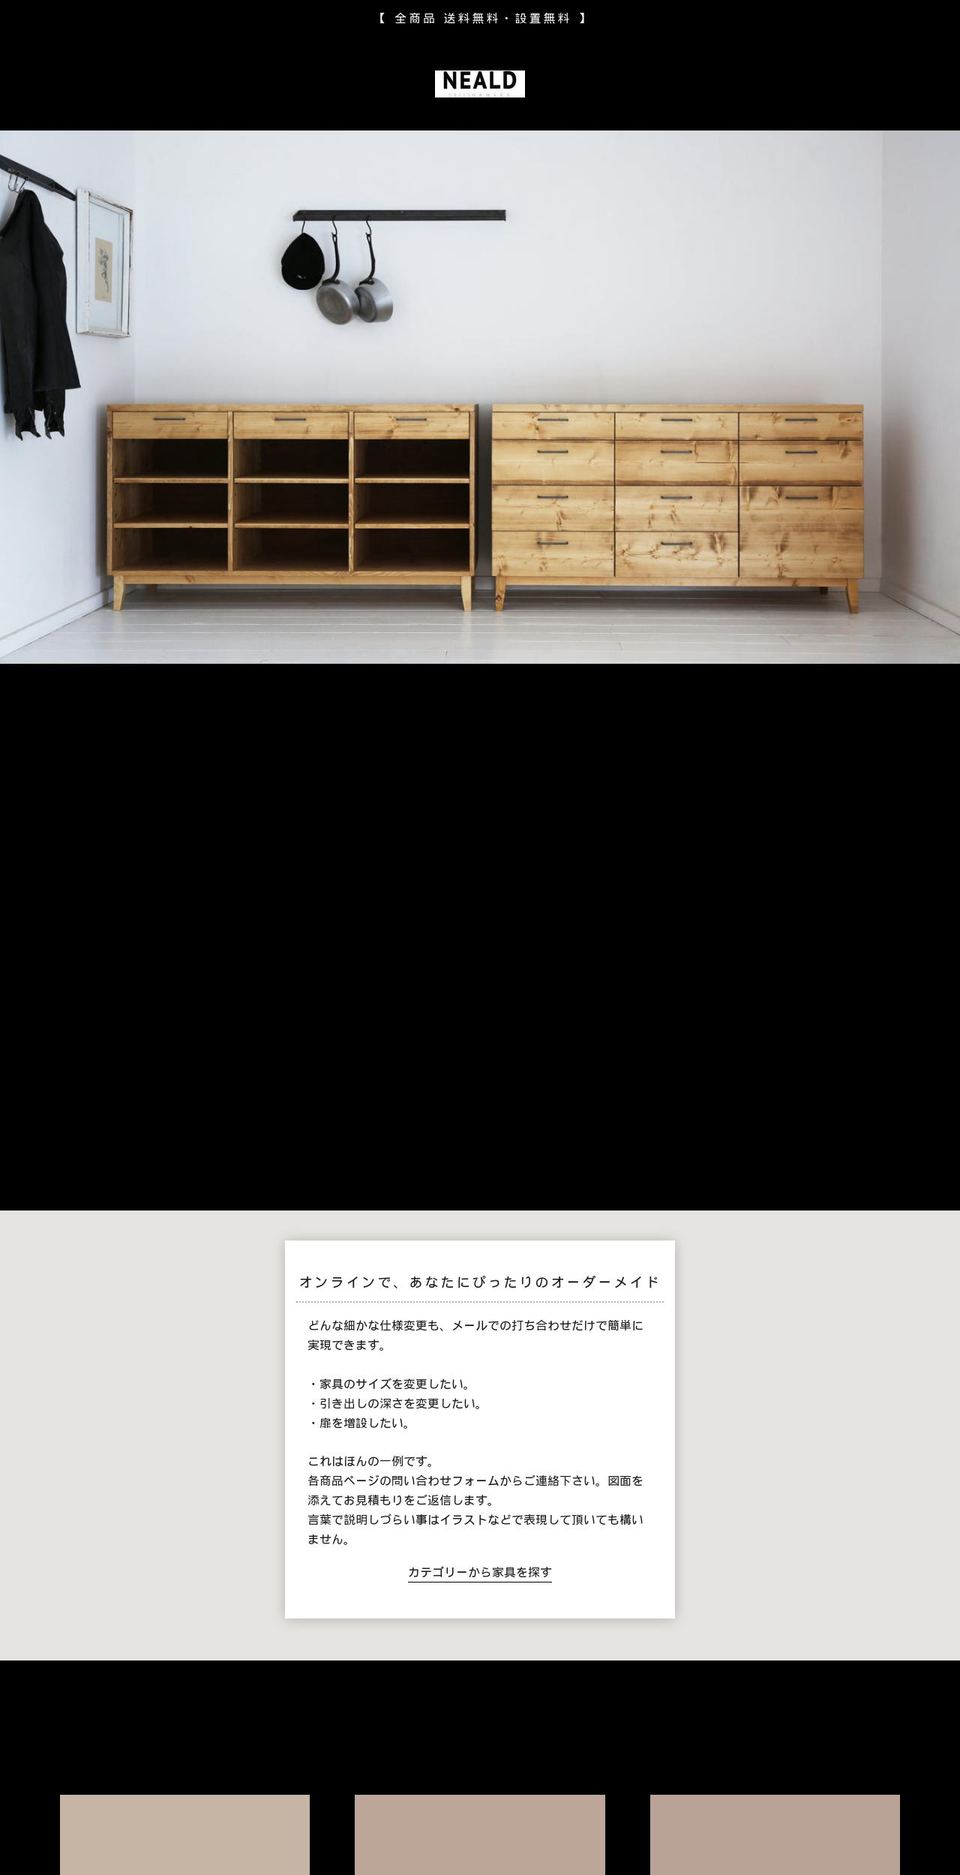 neald.jp shopify website screenshot